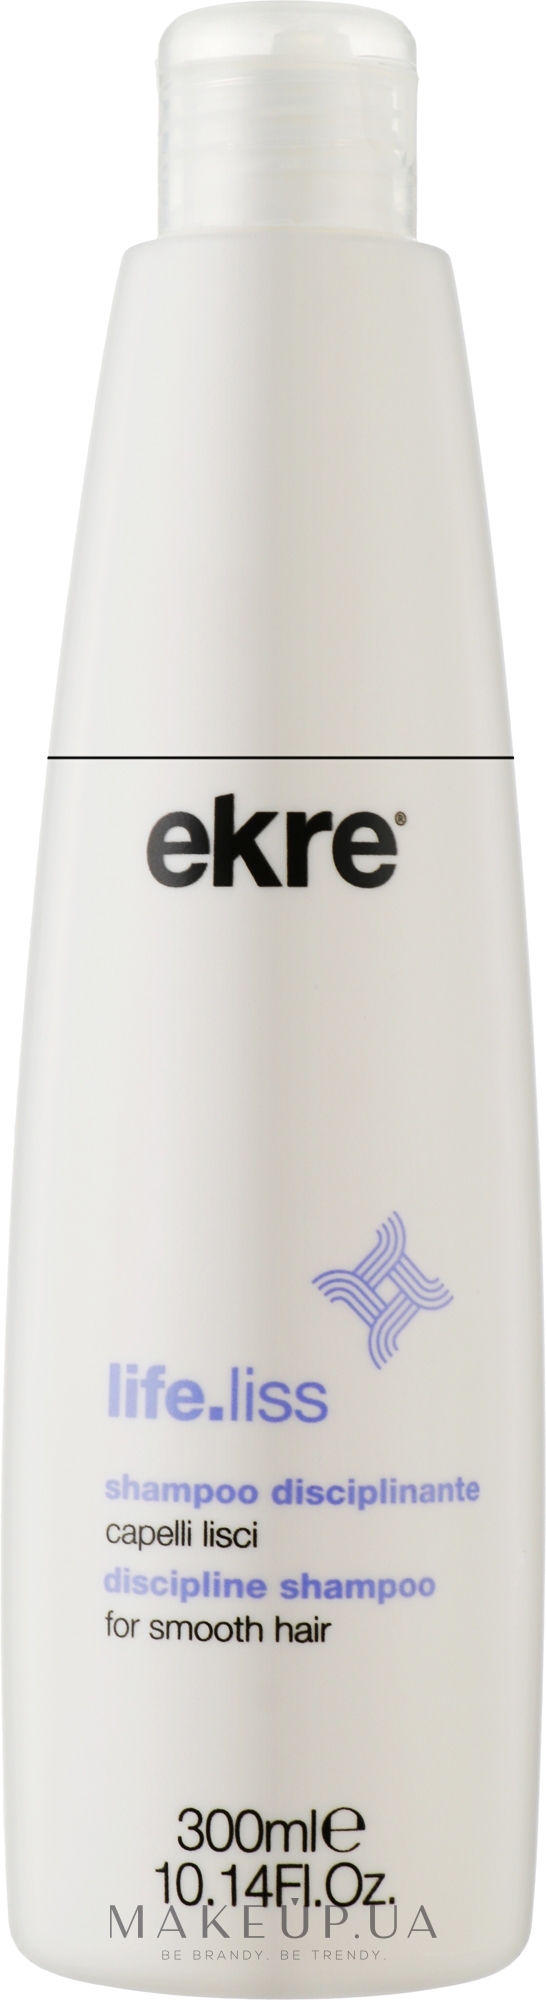 Шампунь для гладкості волосся - Ekre Life.Liss Discipline Shampoo Smooth Hair — фото 300ml